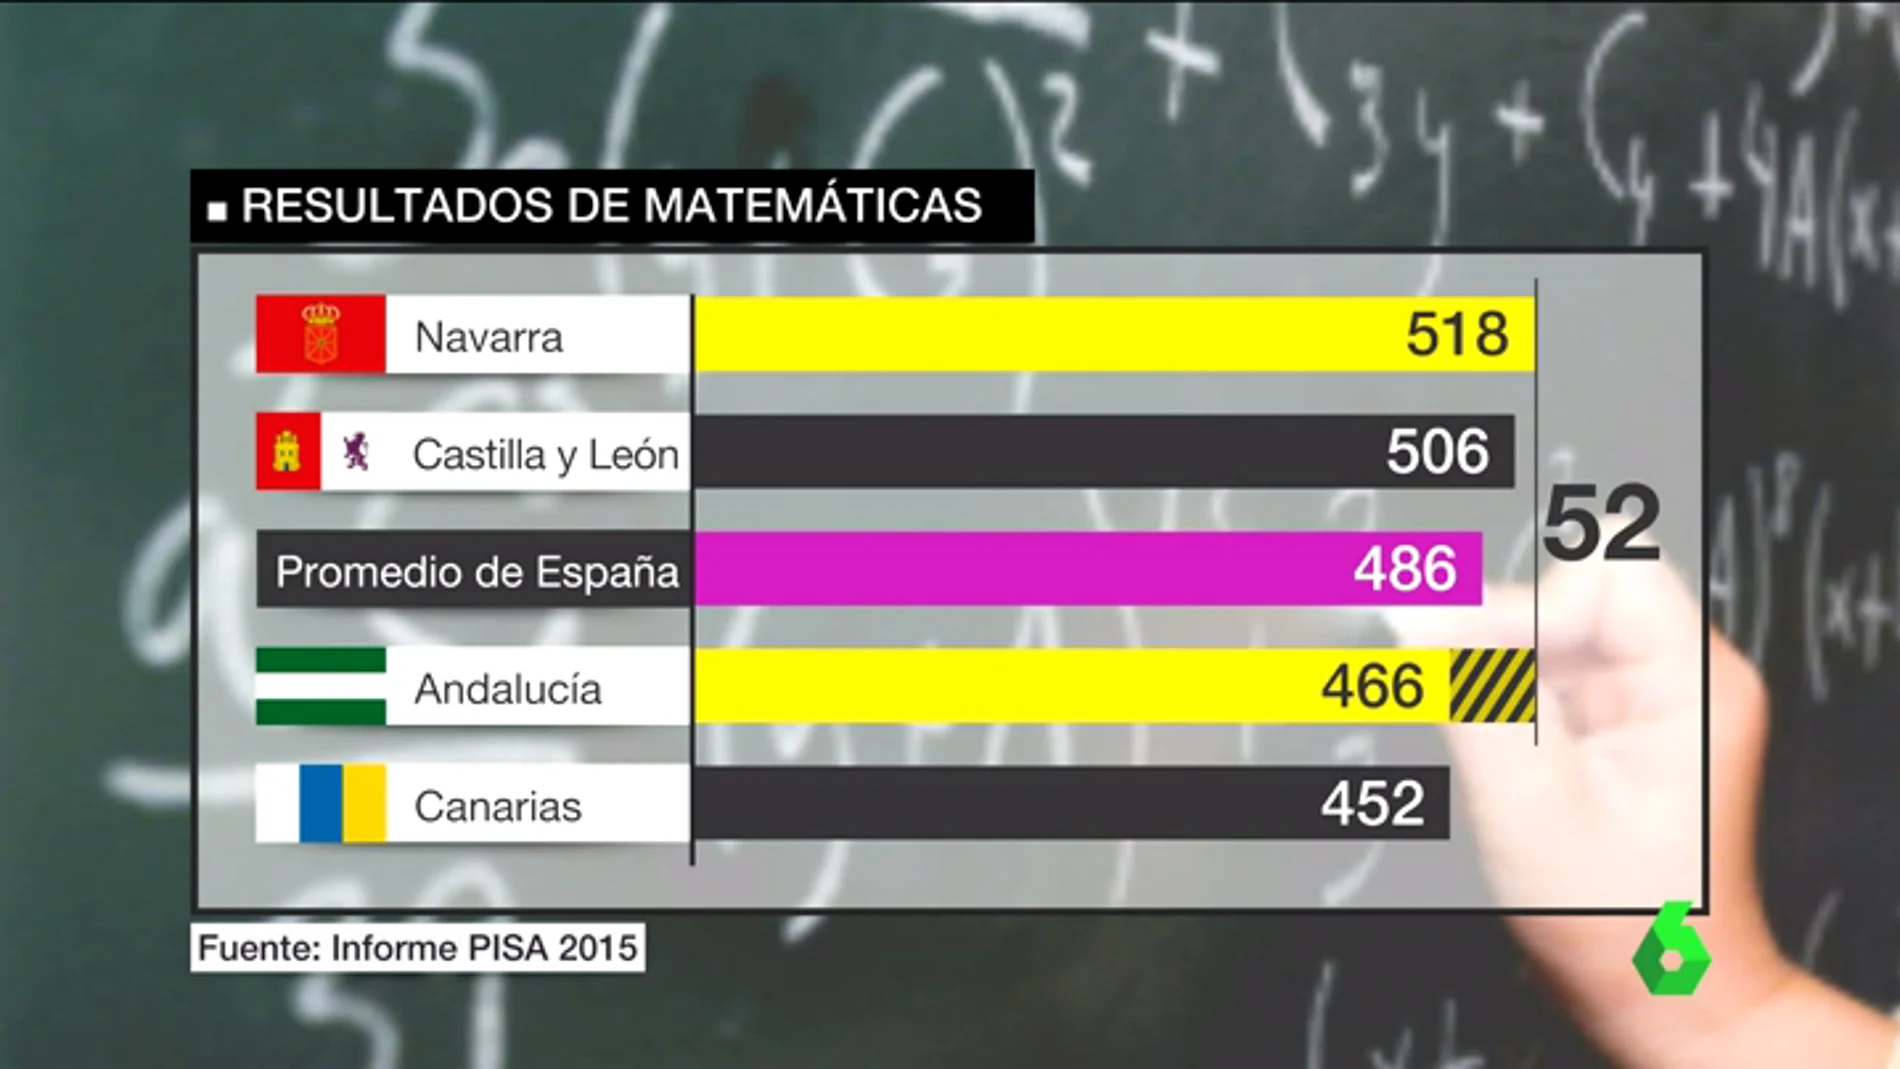 Frame 42.065012 de: Entre Navarra, de los mejores resultados, a Andalucía, de los peores: las diferencias educativas que deja el informe PISA